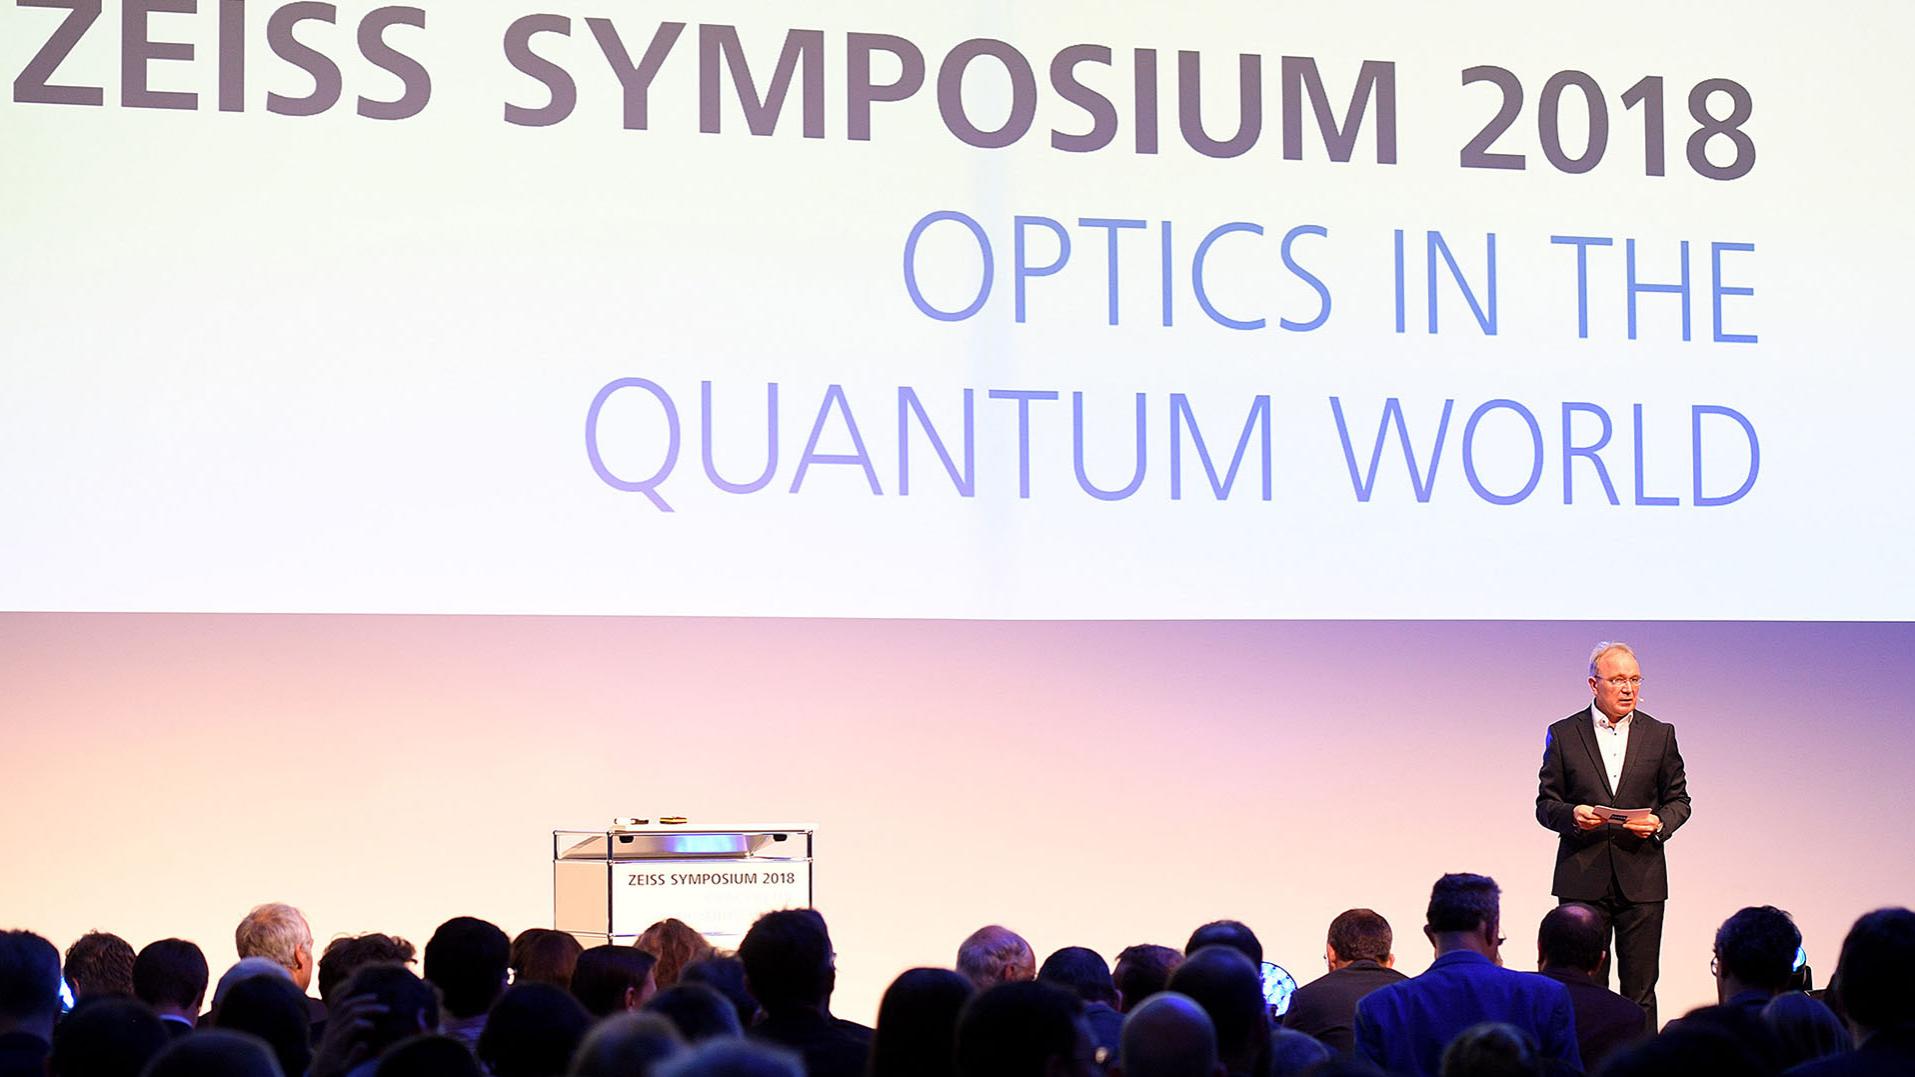 Rund 300 internationale Experten aus Wissenschaft und Industrie sind beim ZEISS Symposium „Optics in the Quantum World“ in Oberkochen zusammengekommen, um über Trends und neue Wissenschaftserkenntnisse im Bereich der Quantentechnologien zu sprechen.